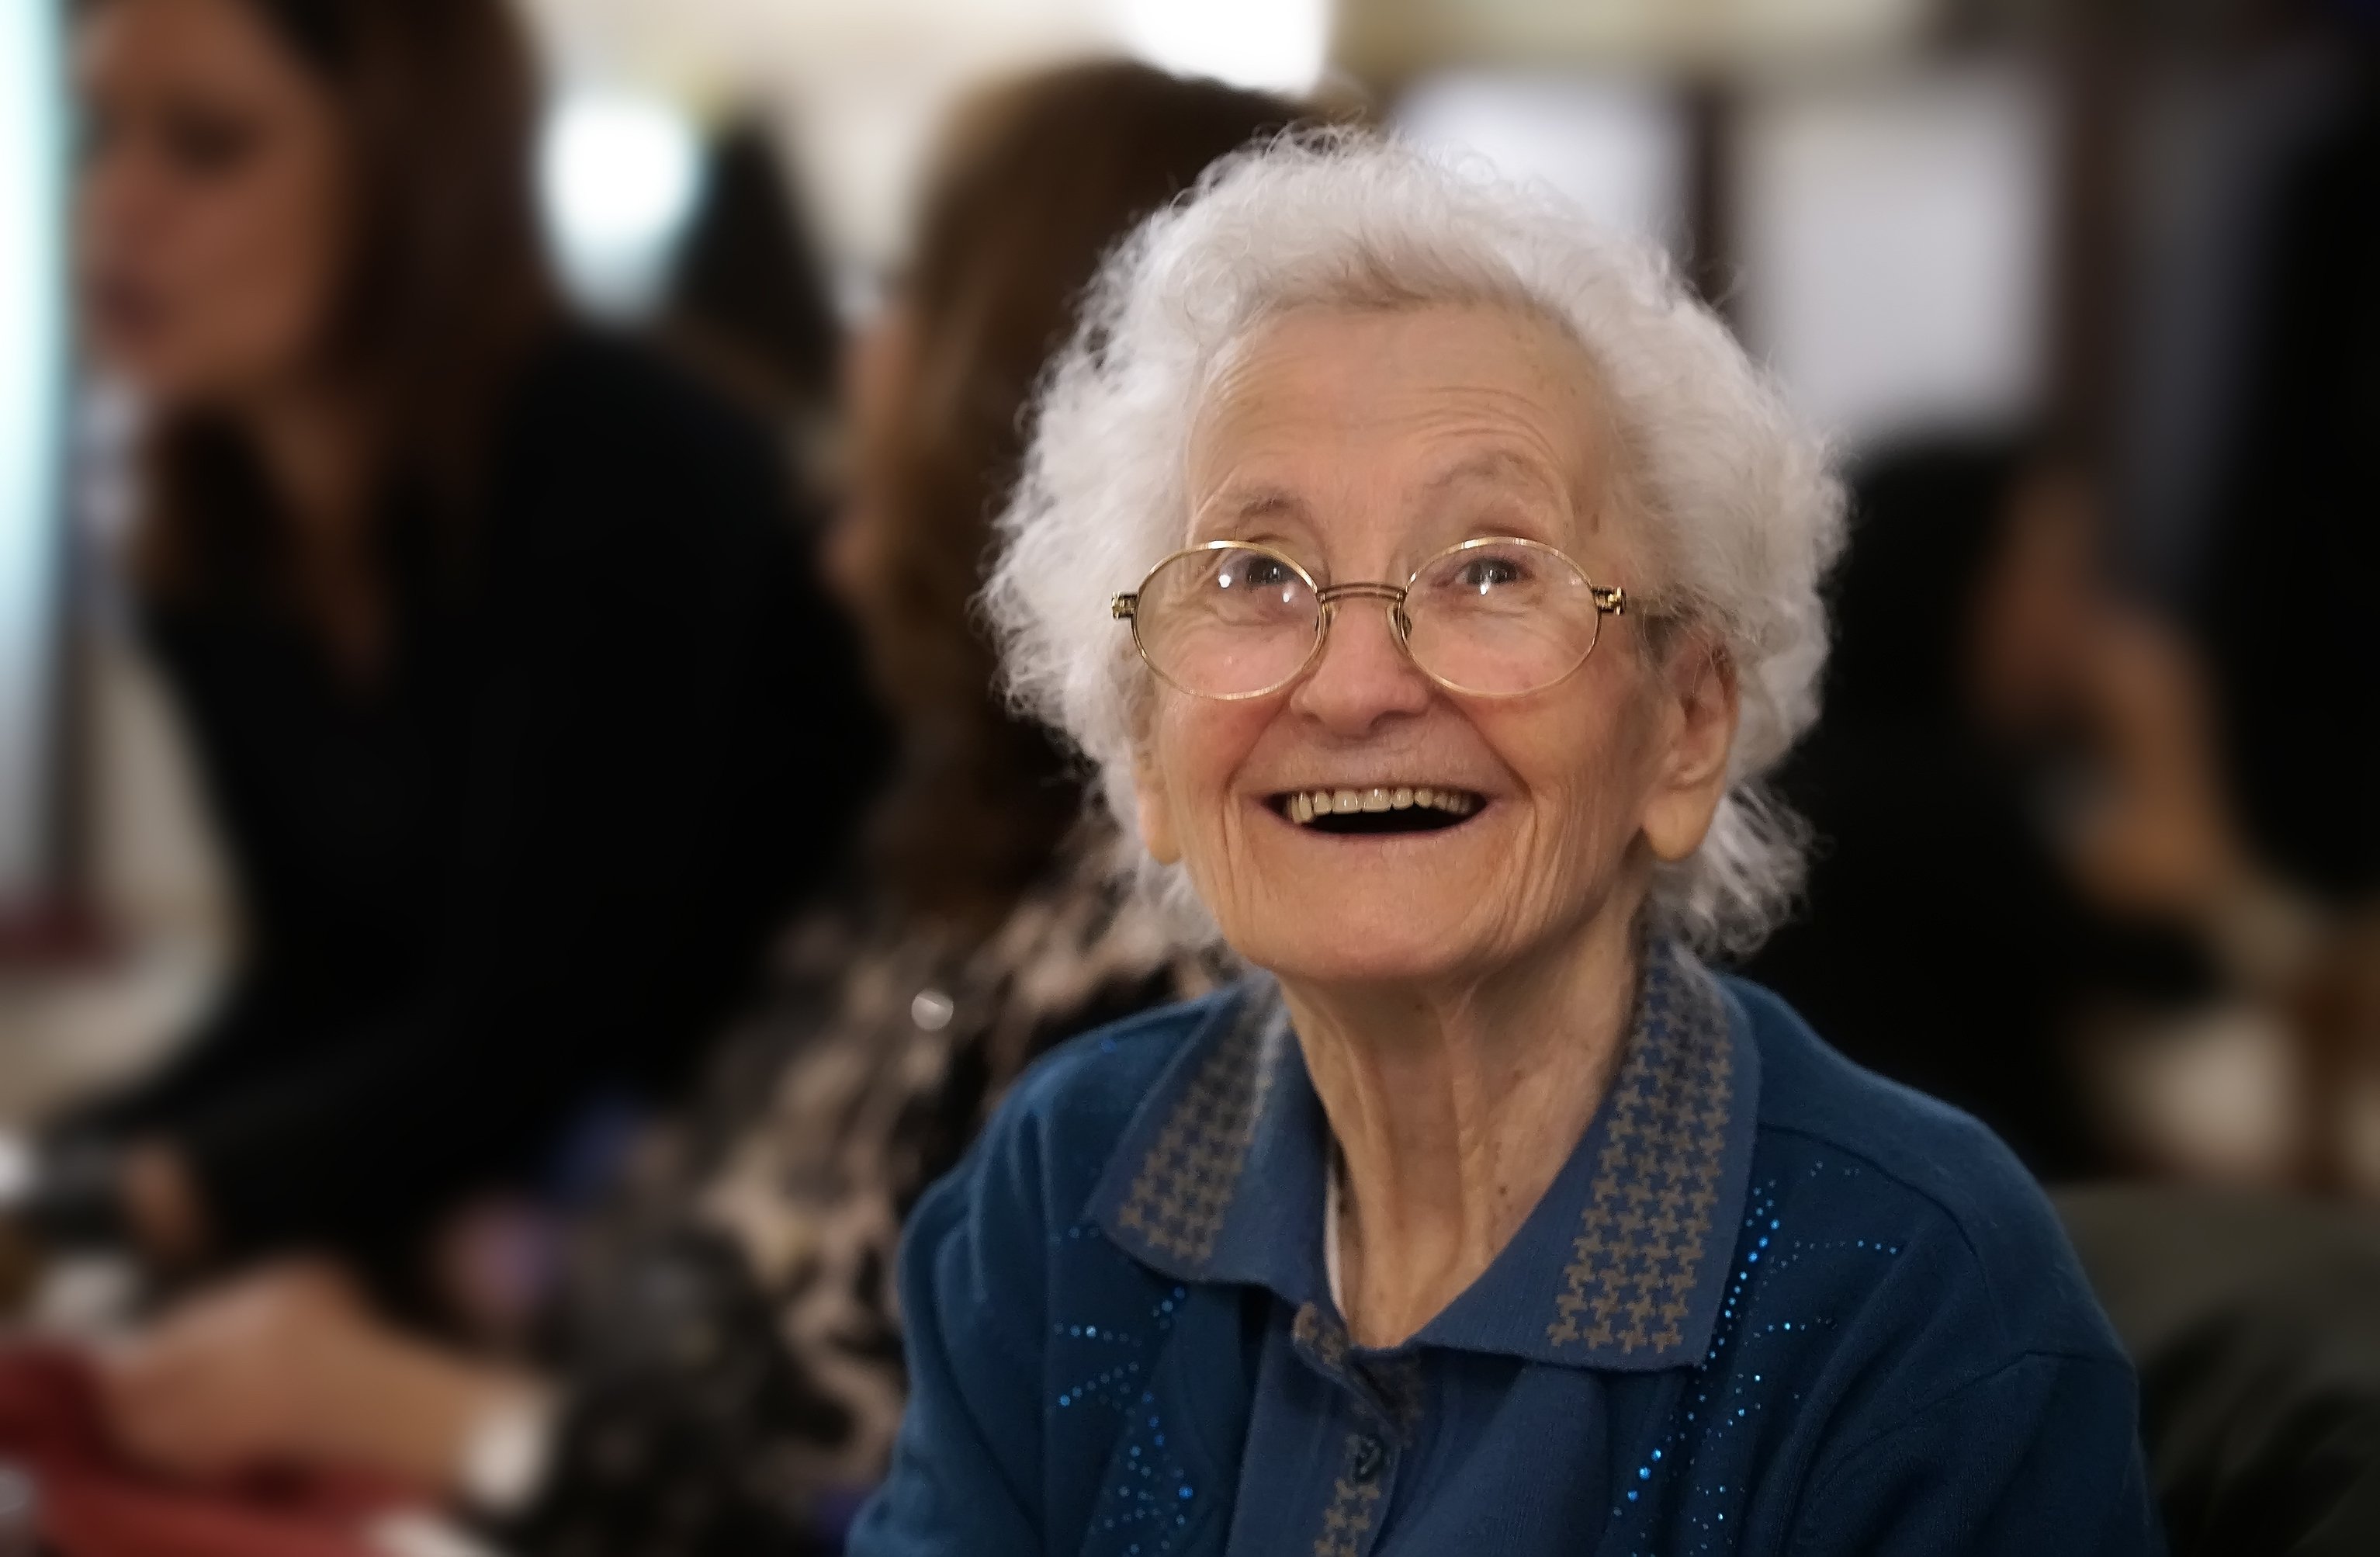 An older woman | Photo: Shutterstock